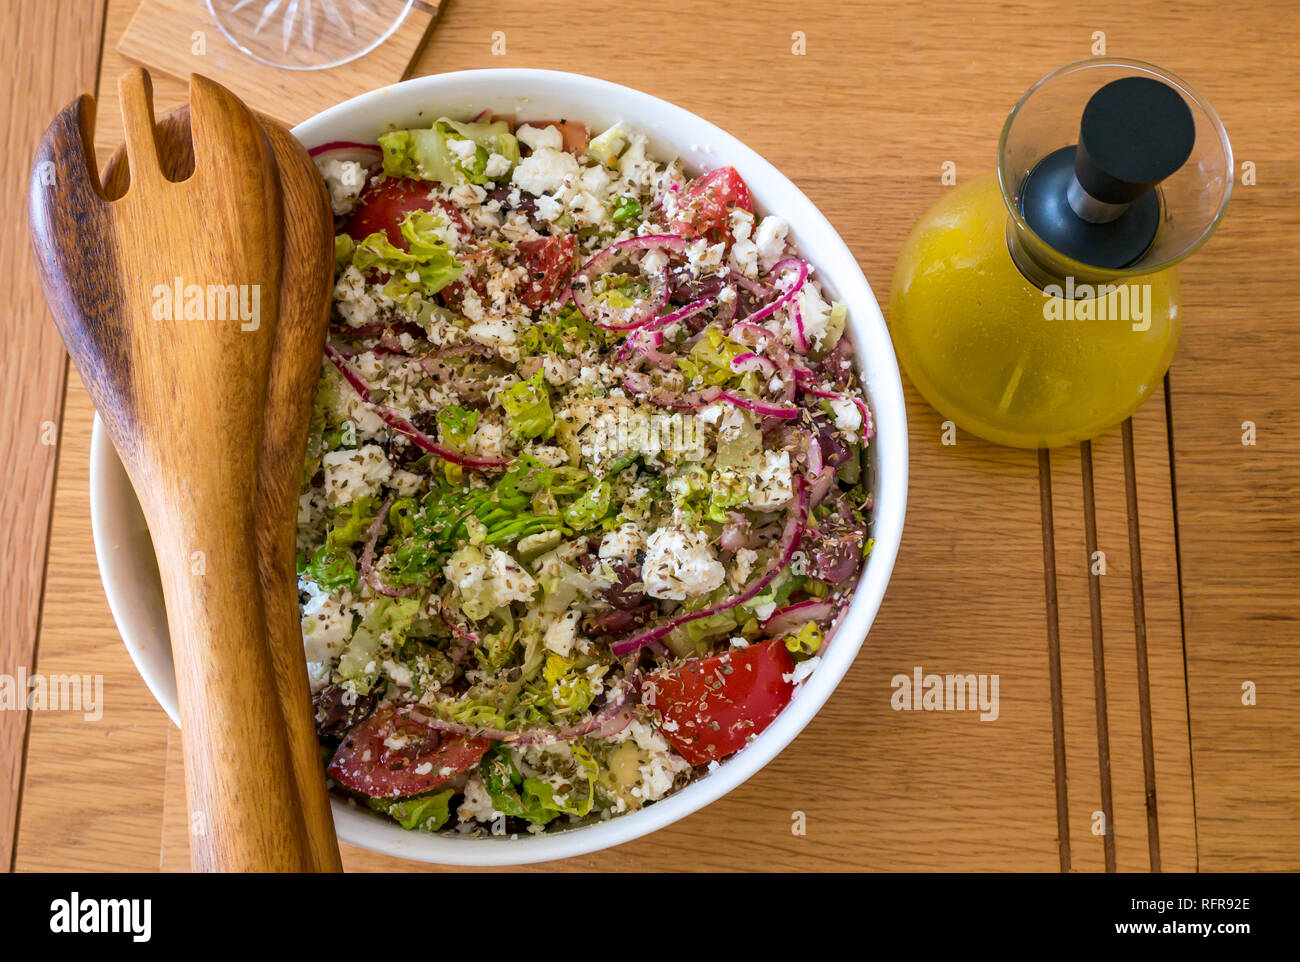 Weißes geschirr Salat Schüssel mit Griechischer Salat mit Feta, Tomaten,  marinierte rote Zwiebeln, Avocado Salat und lemon Vinaigrette  Stockfotografie - Alamy